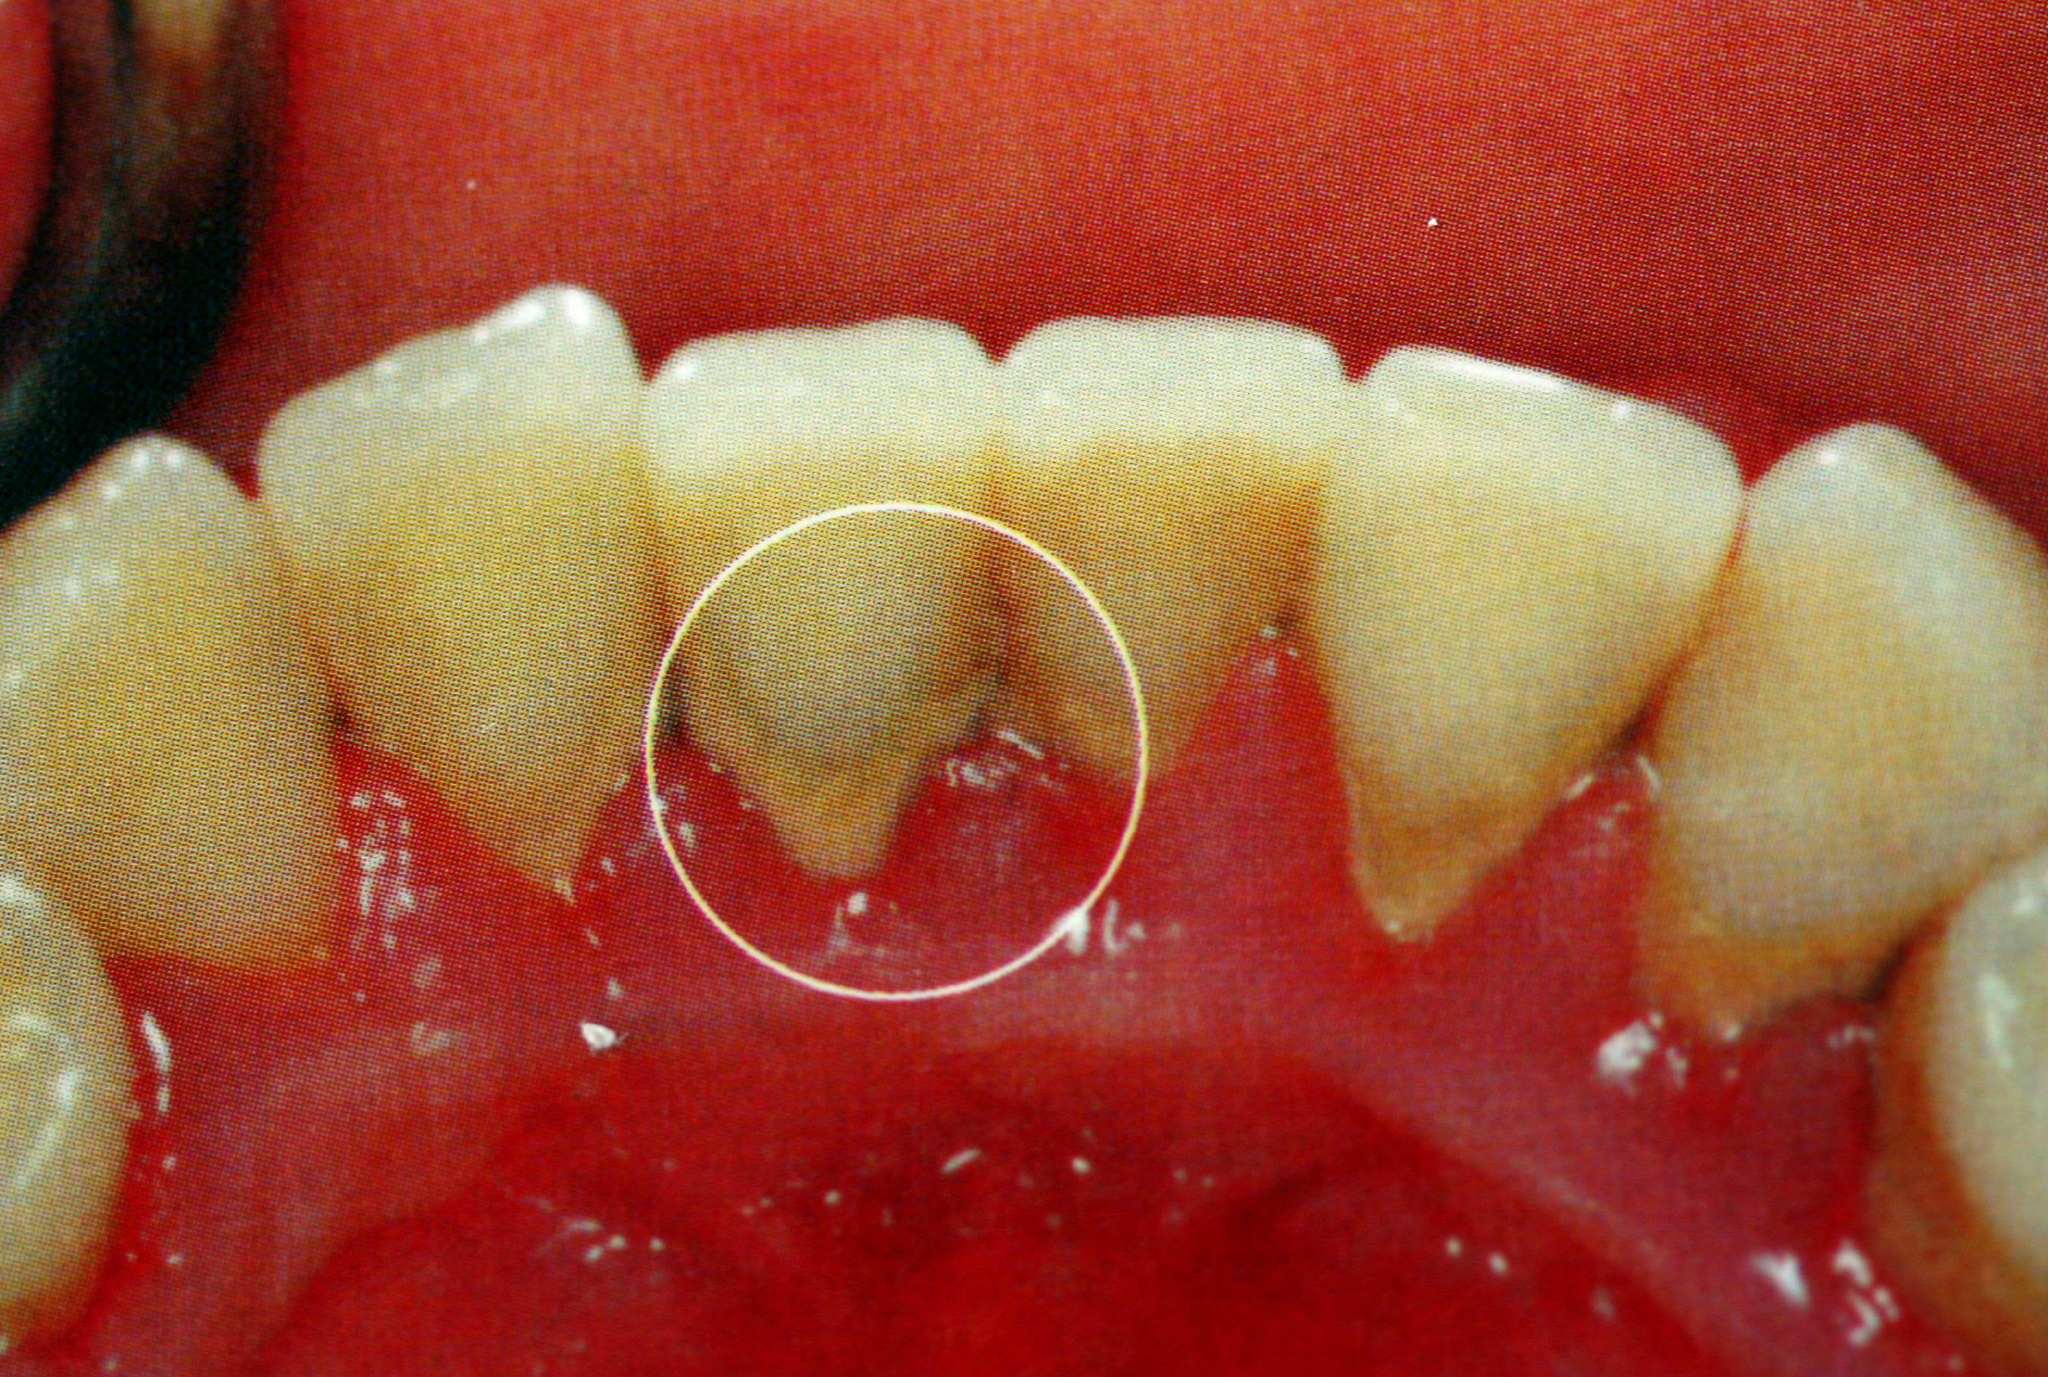 1,牙菌斑牙结石黑三角产生原因:对于黑三角,我们总是无可奈何,其实并